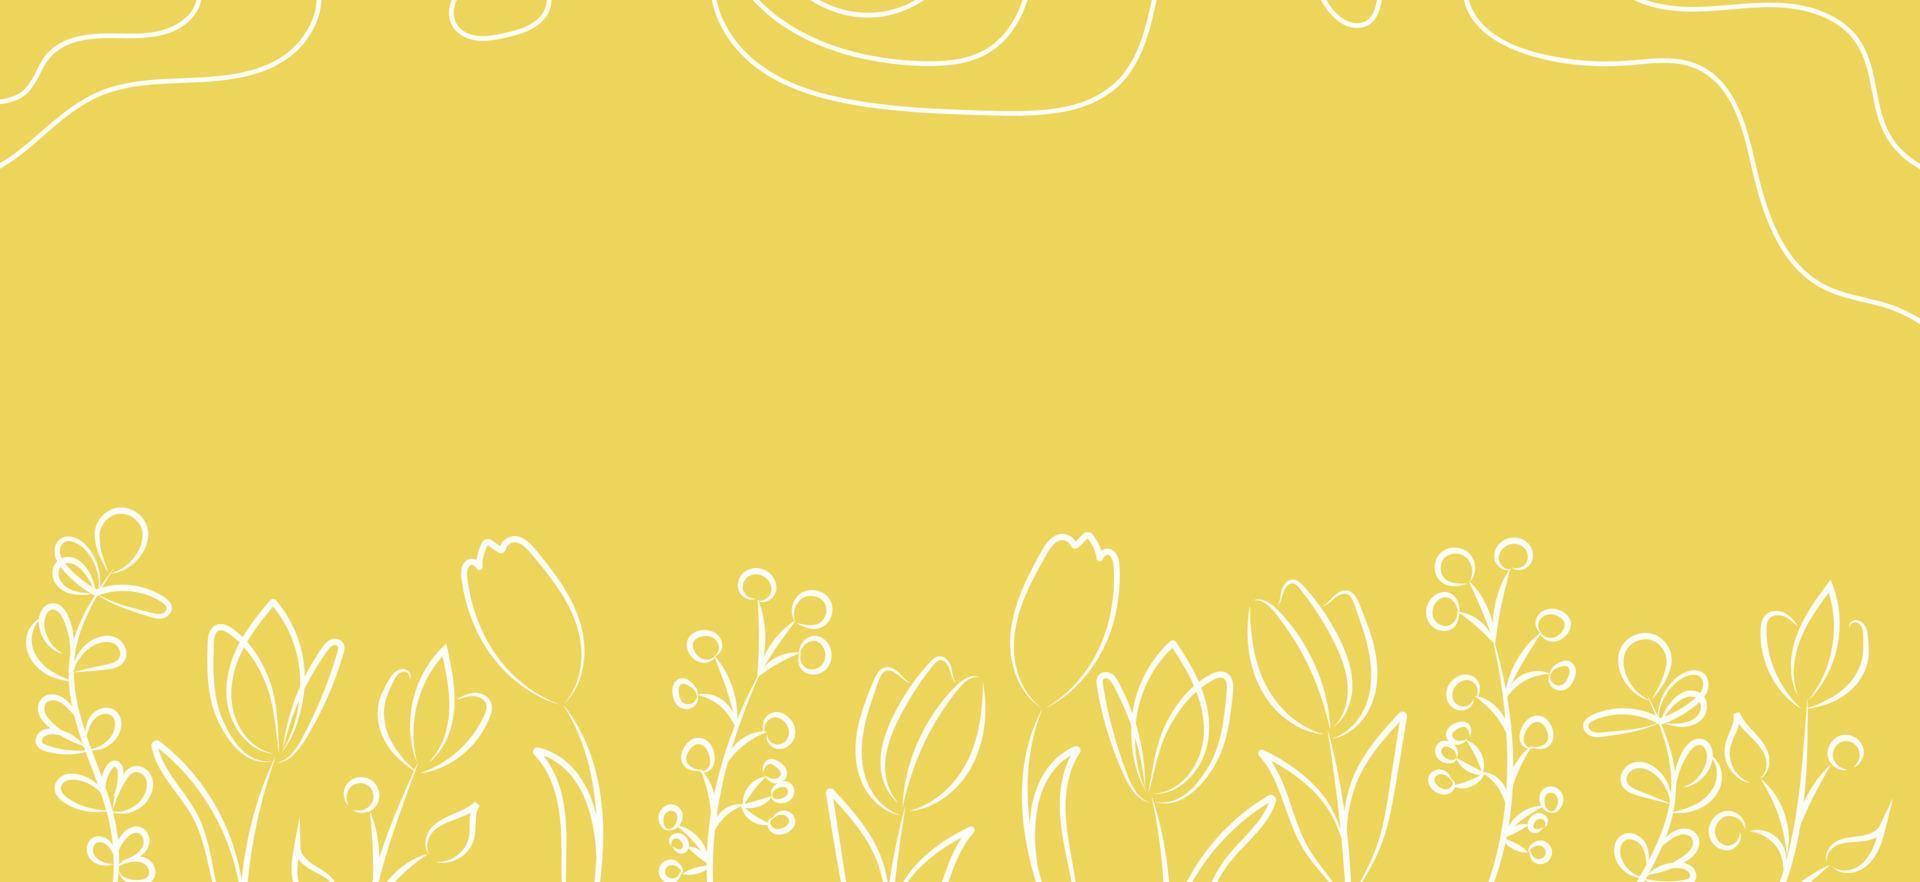 banner astratto lineare di vettore. carta da parati in stile minimalista per la primavera e l'estate con foglie e fiori botanici, forme organiche. per poster, poster, sfondo, cartolina, sito Web e packaging. vettore